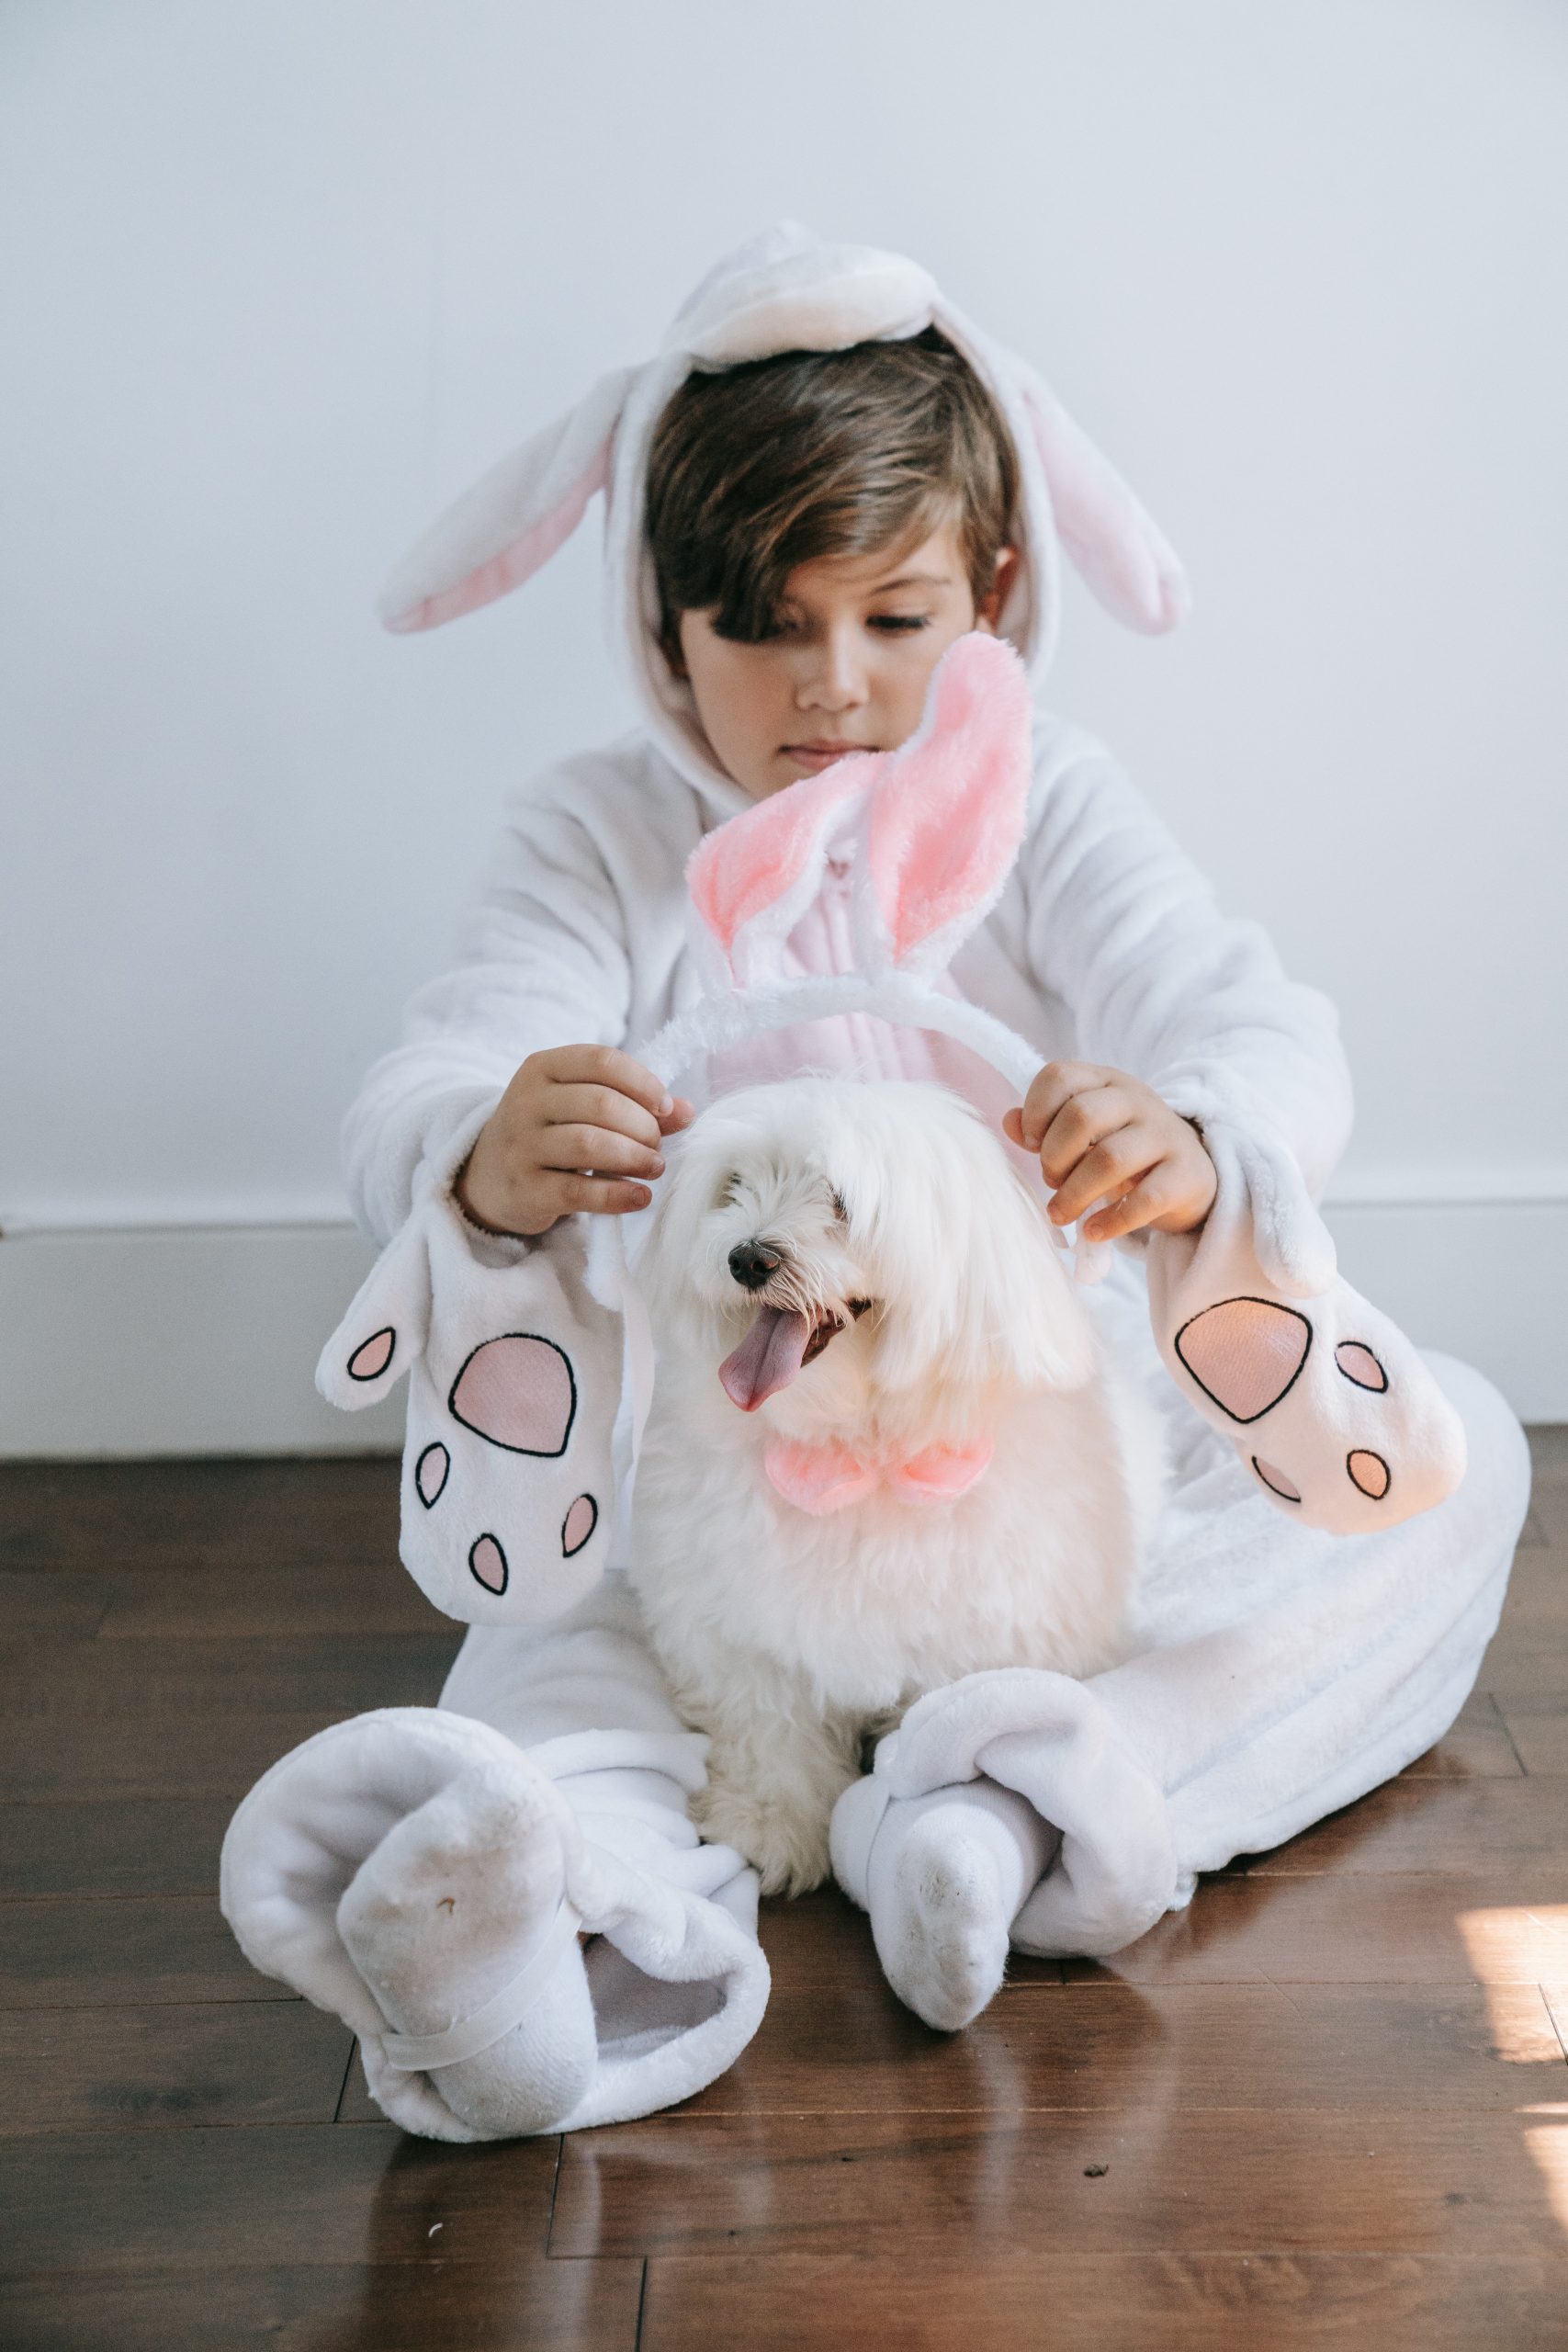 ילד עם לבוש של ארנב מניח אוזני עכבר על כלב שיושב בין רגליו